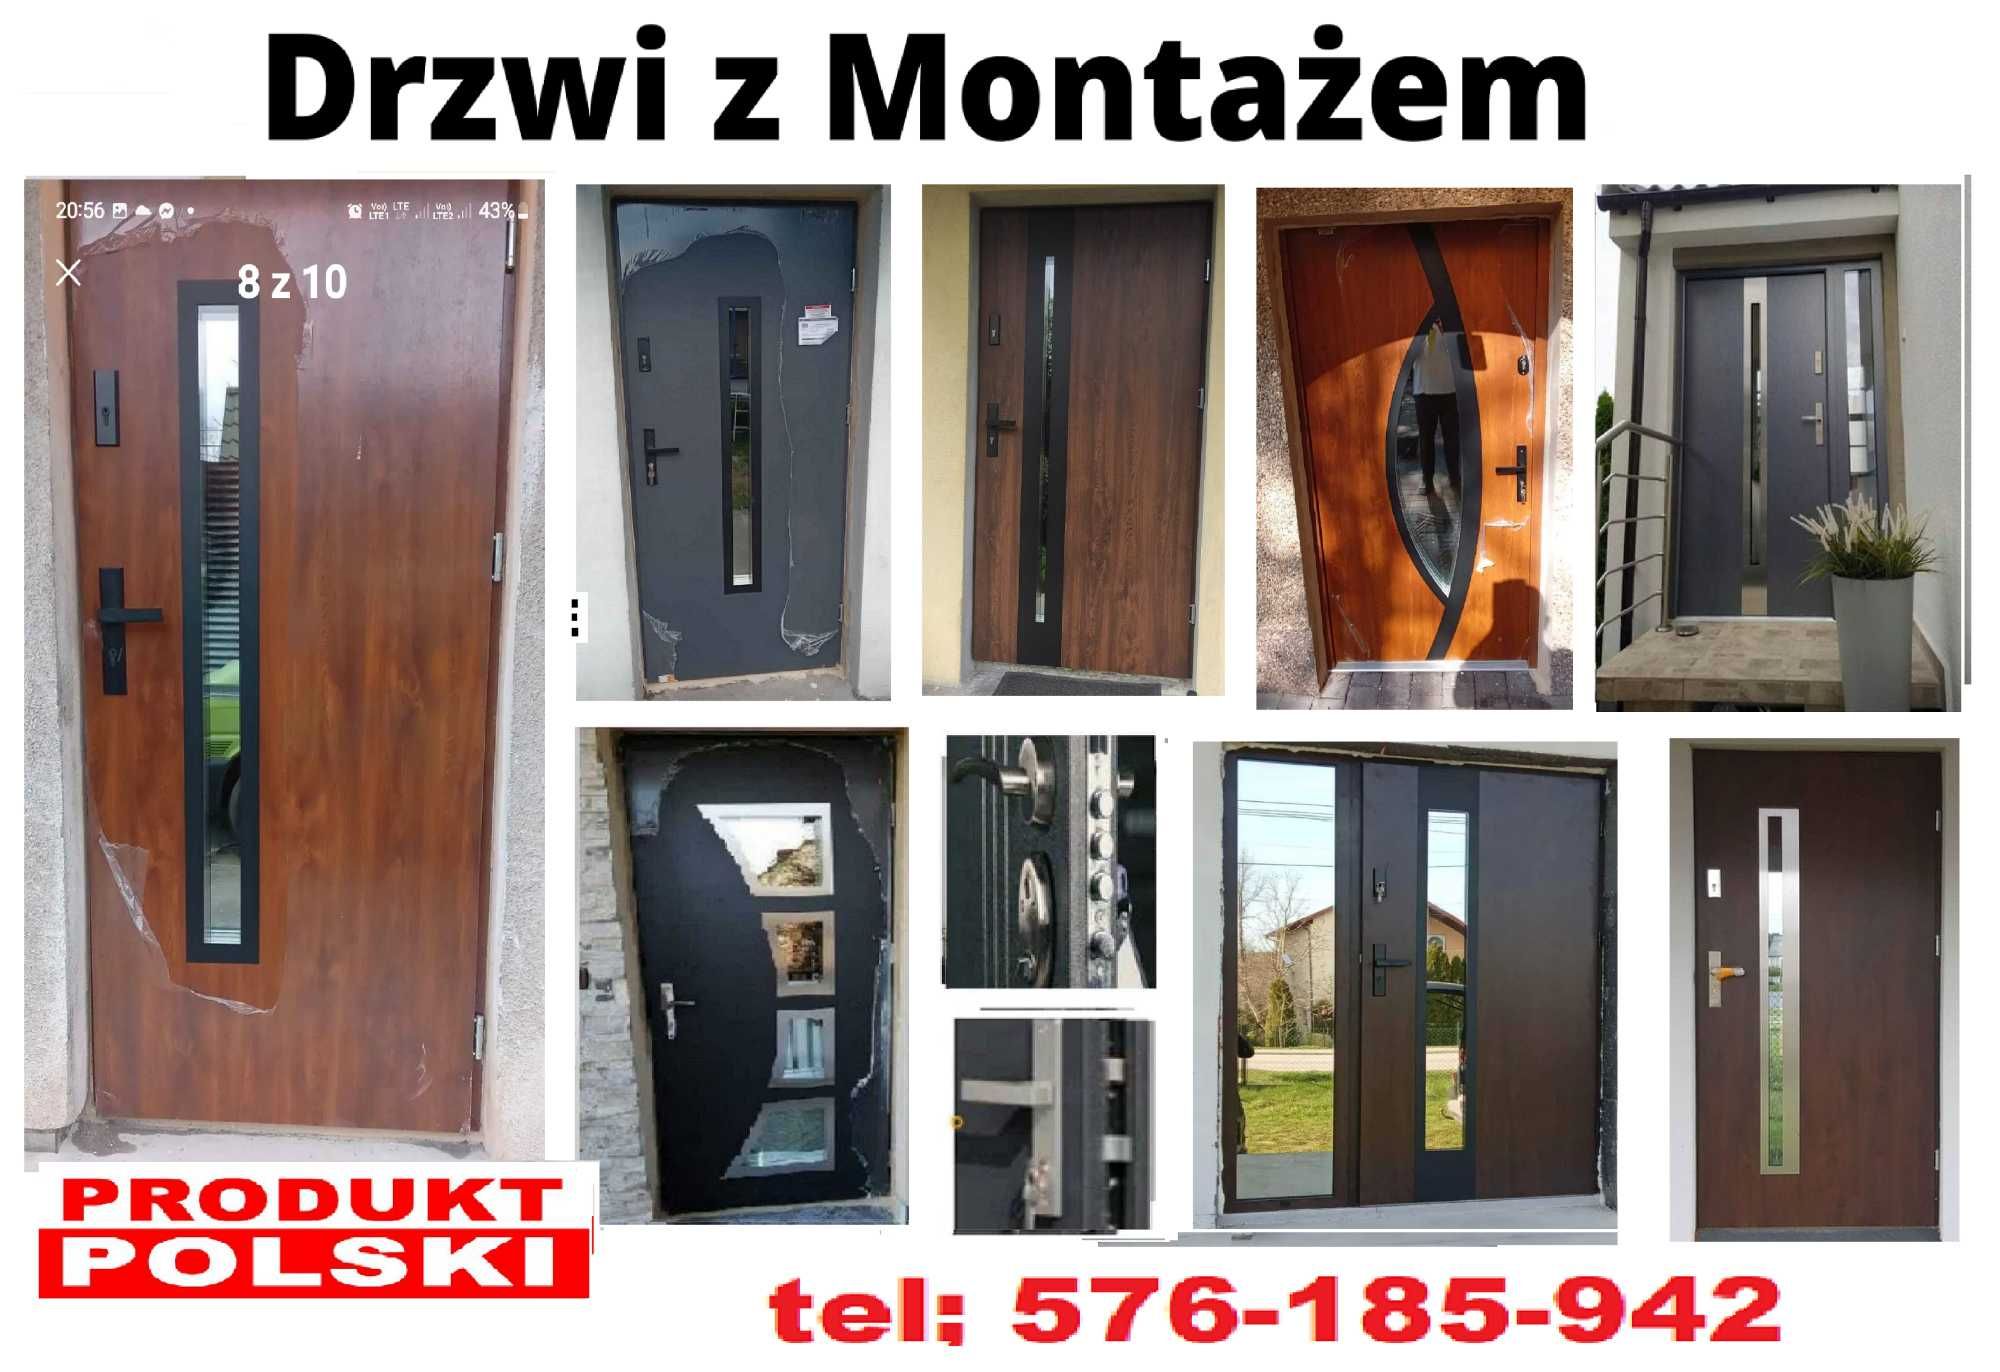 Drzwi WEJĘCIOWE zewnętrzne antywłamaniowe z montażem ,polskie